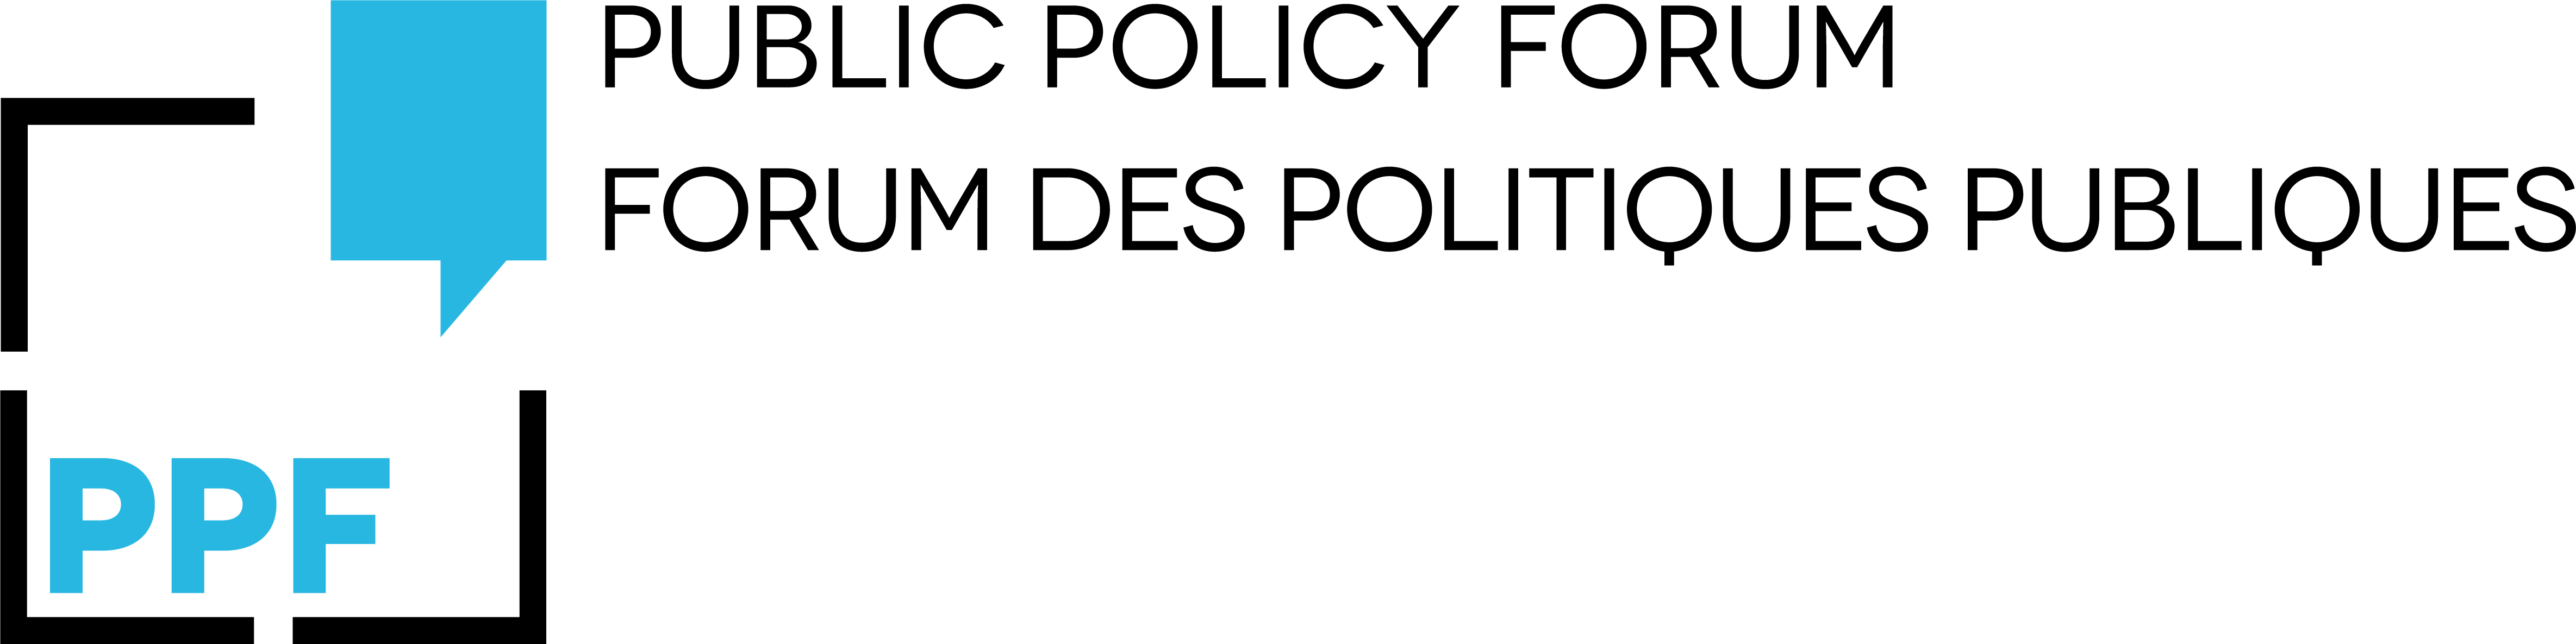 Public Policy Forum Logo